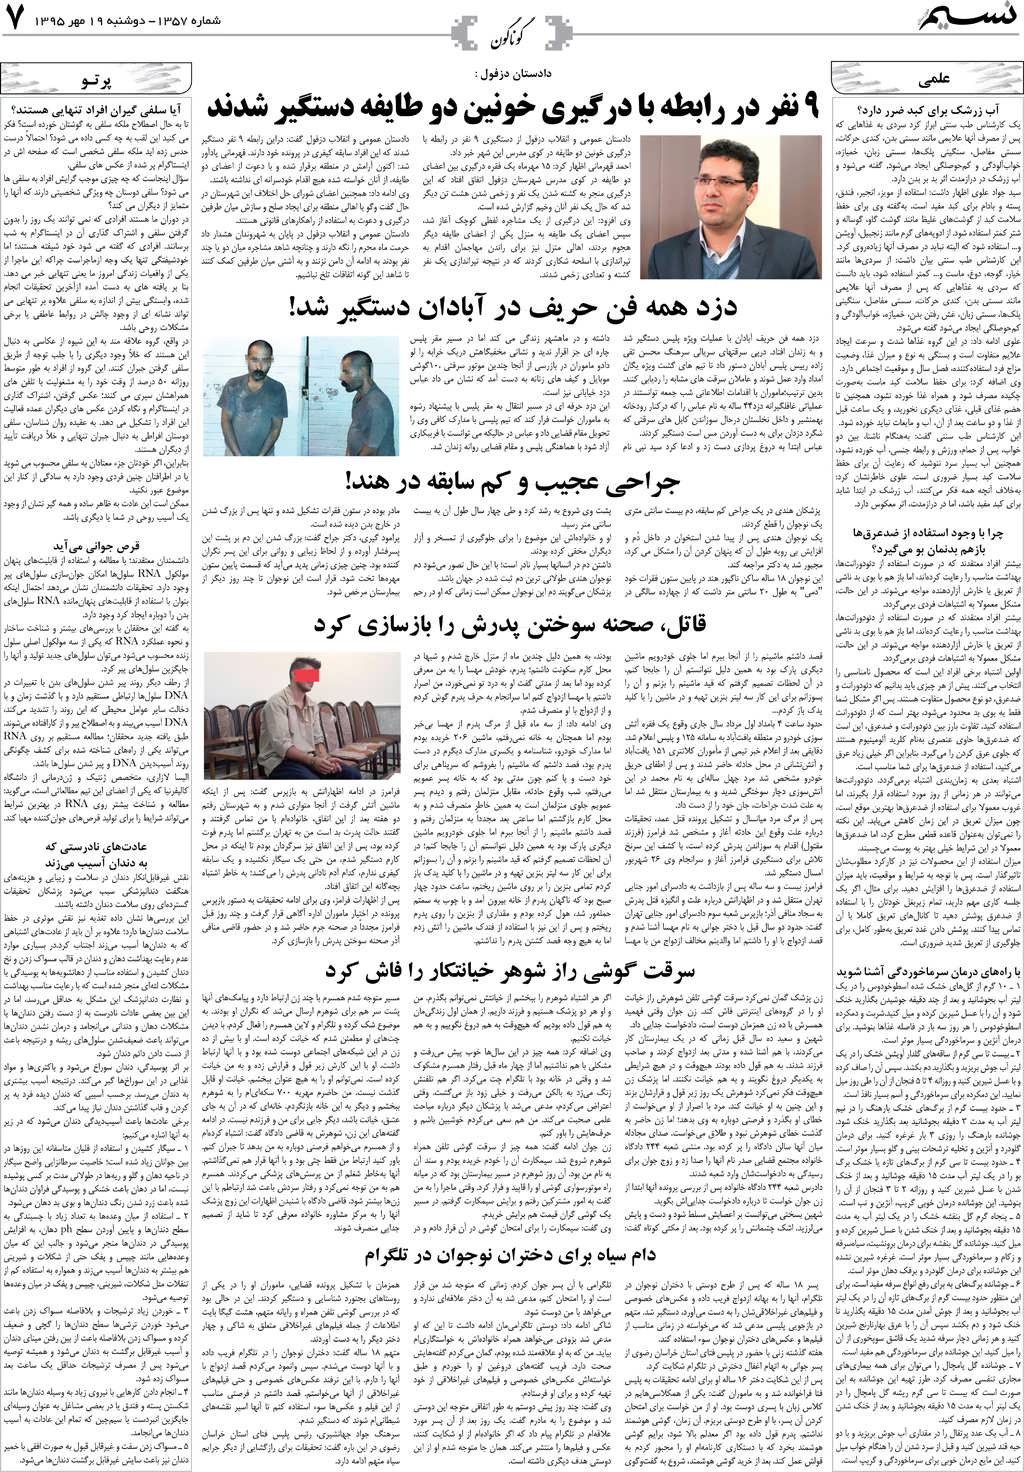 صفحه گوناگون روزنامه نسیم شماره 1357